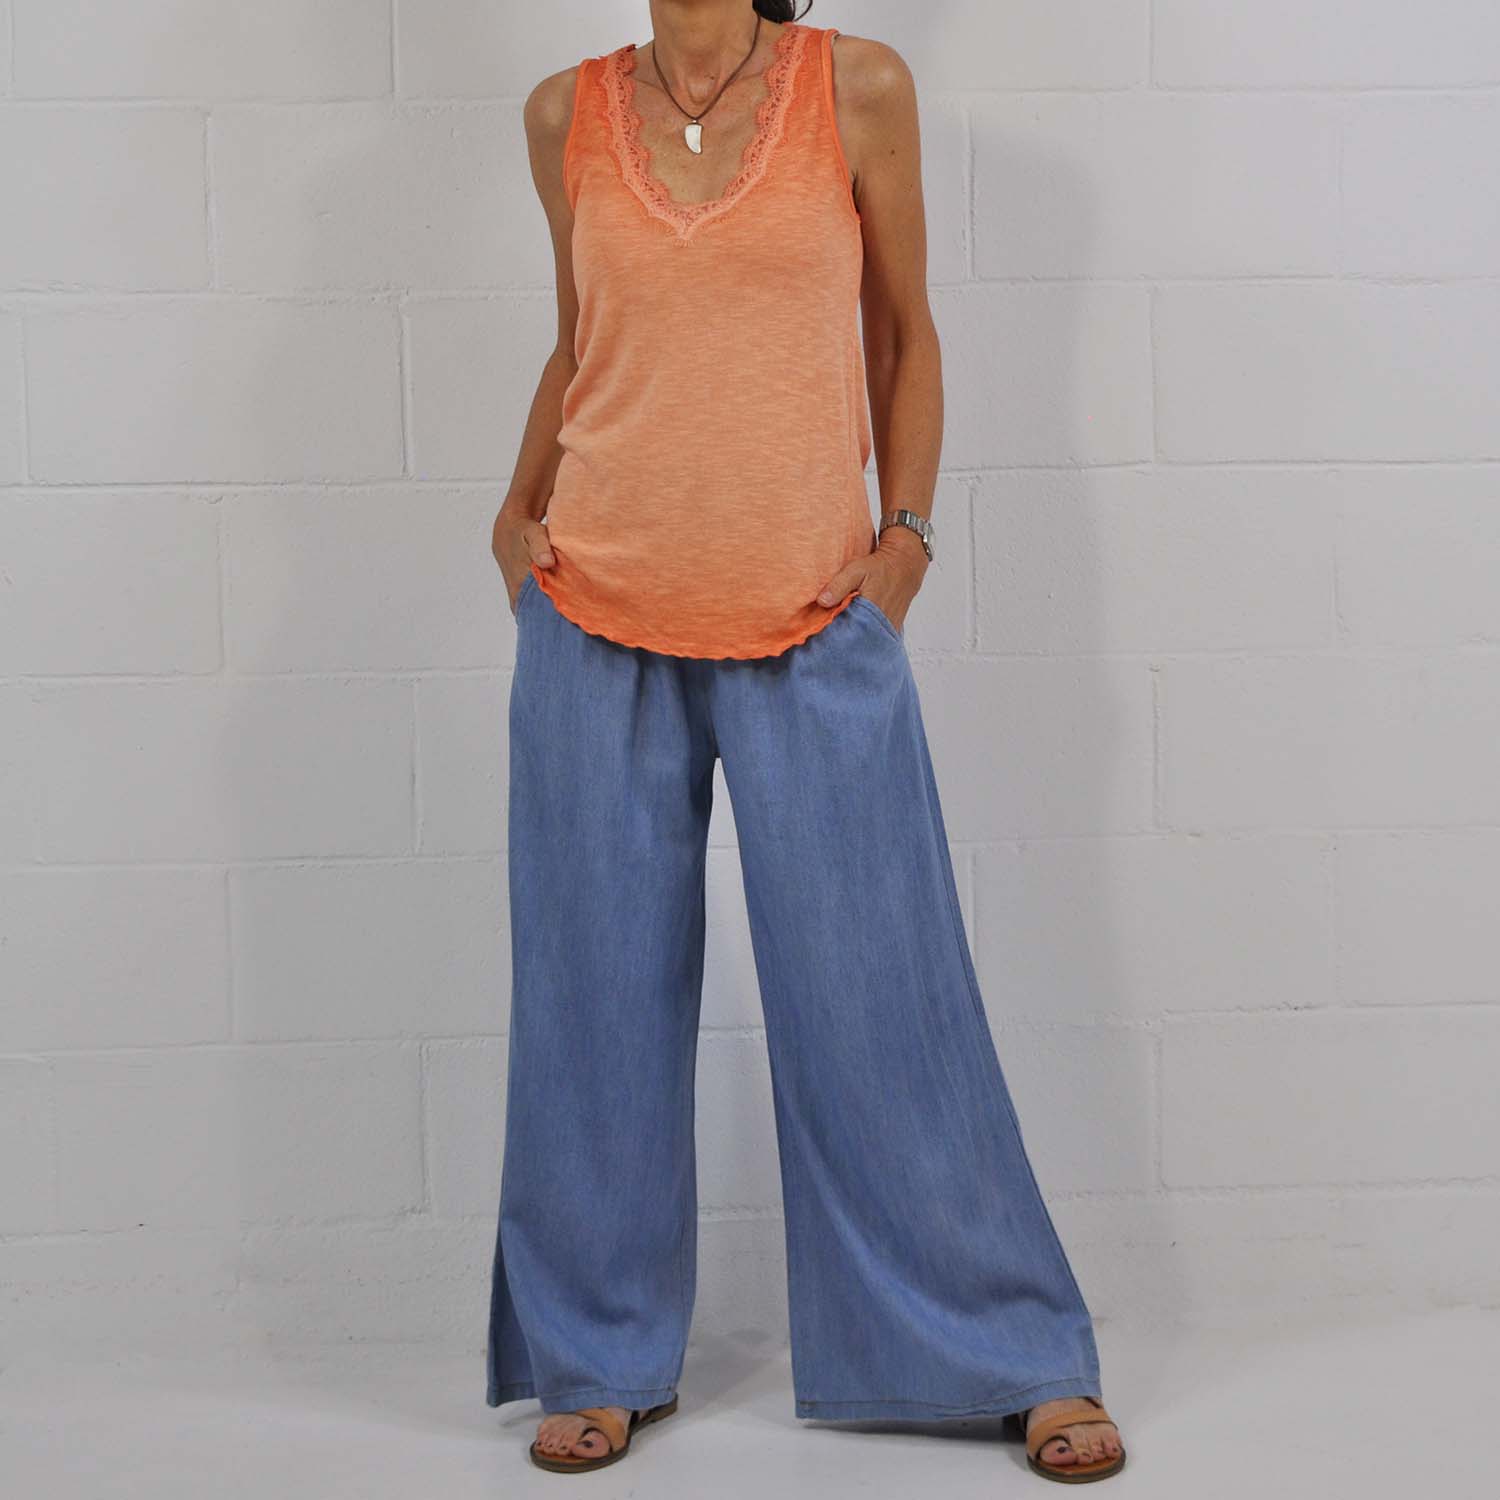 Margaret Mitchell Exponer Paraíso Camiseta tirantes lencera naranja – The Amisy Company